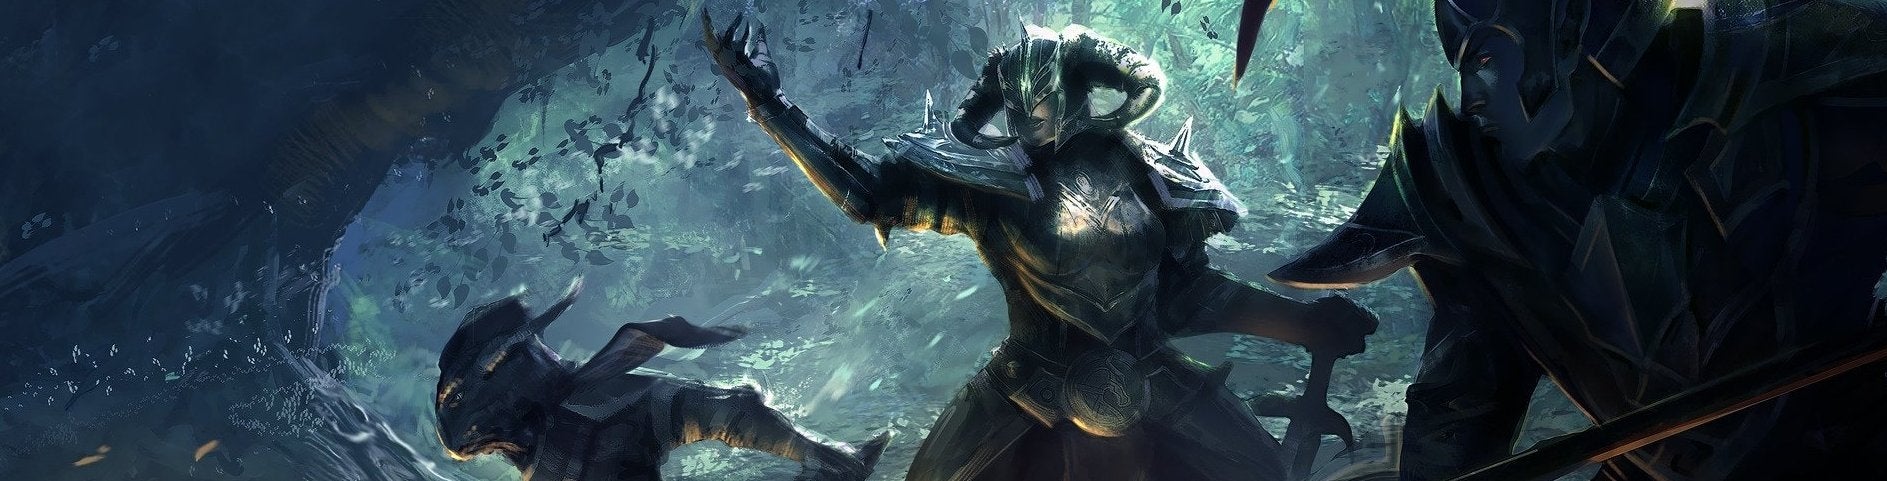 Image for TÉMA: The Elder Scrolls Online pro časově vytížené a sólisty